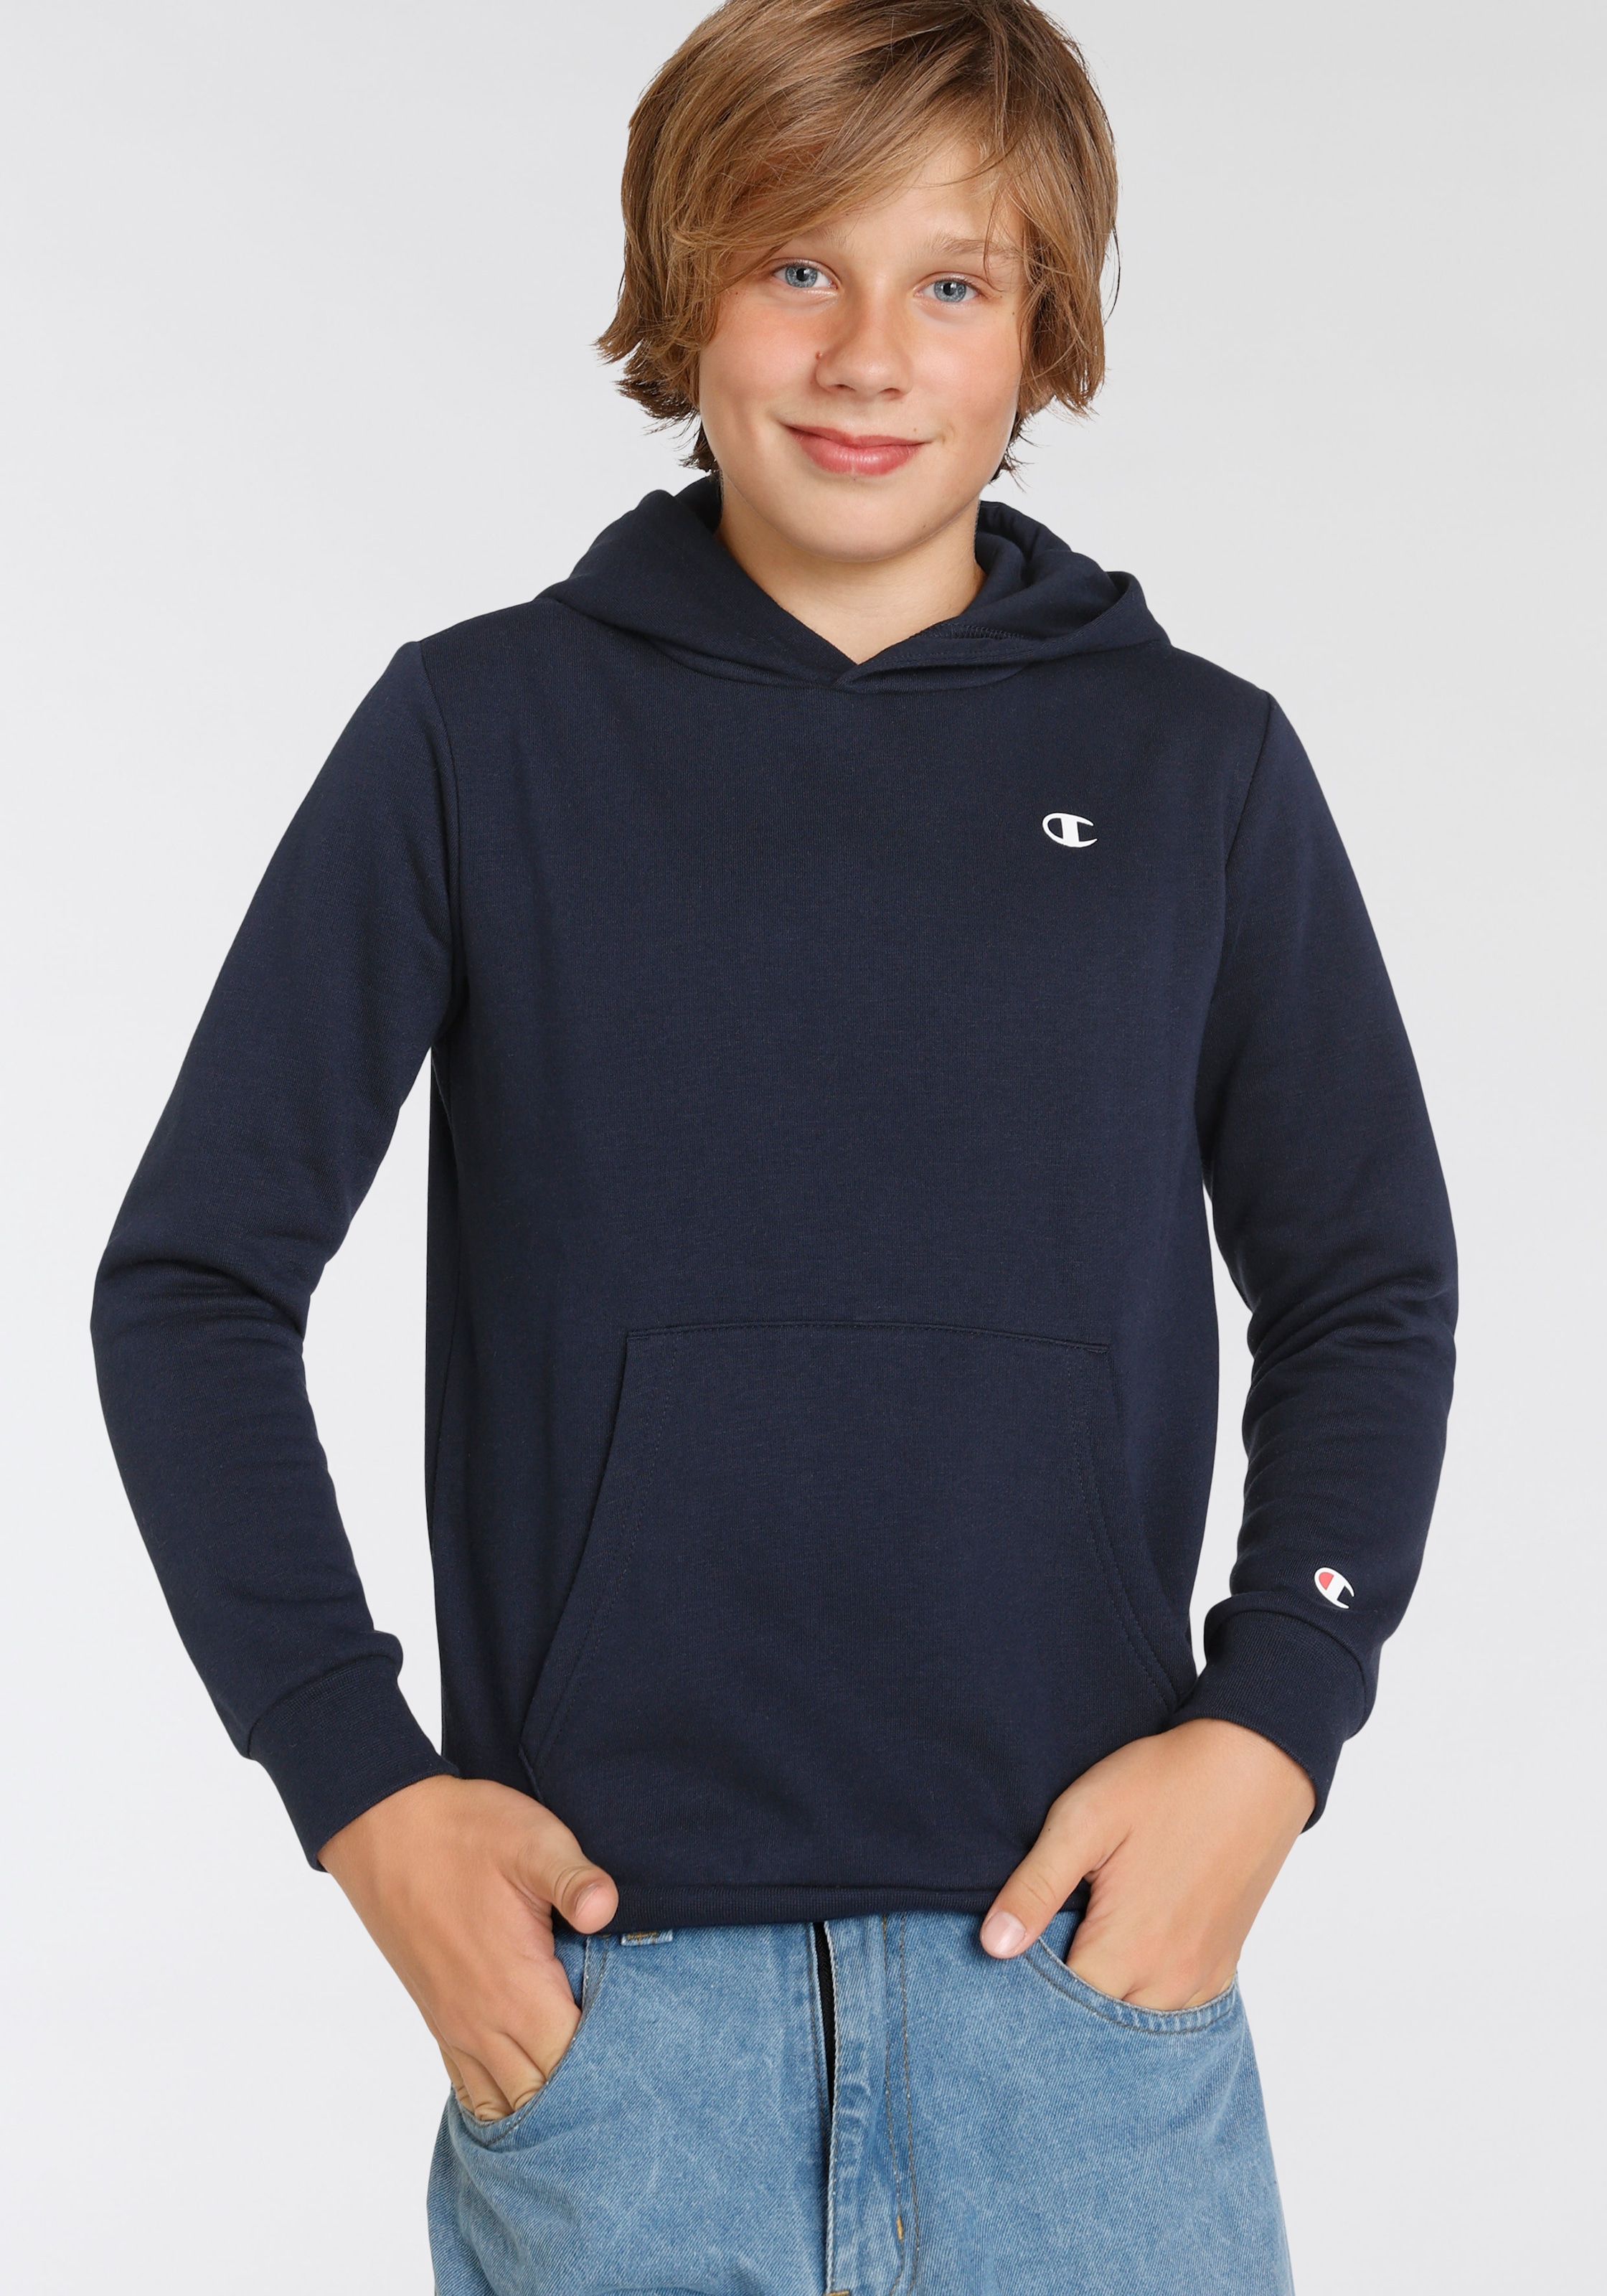 Kinder« - für Trendige Champion versandkostenfrei »Basic kaufen Sweatshirt Hooded Sweatshirt